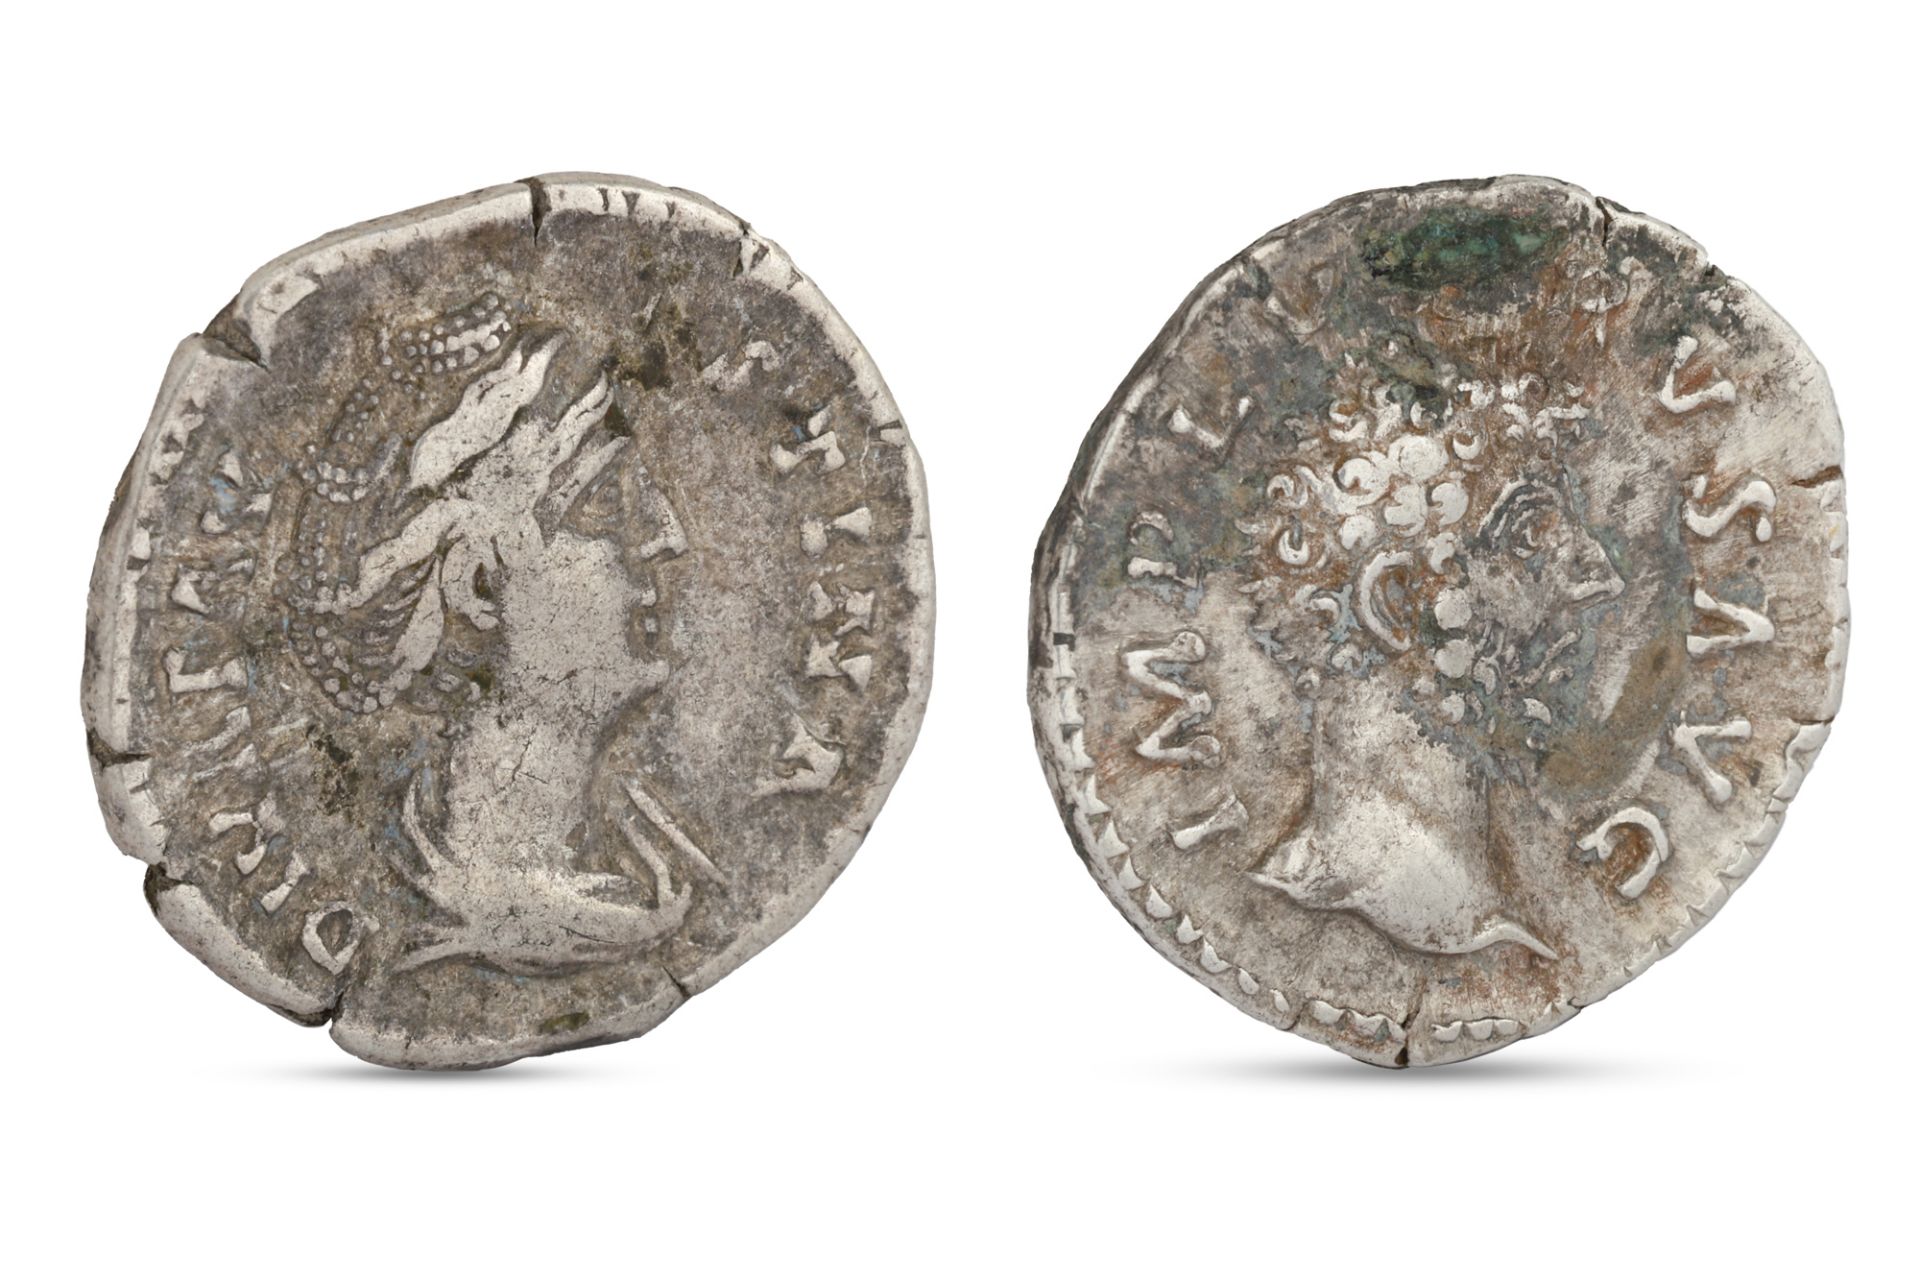 TWO ROMAN SILVER DENARIUS COINS, Lucius versus emperor 16 2/3 AD. VF and a Faustina Maior empress